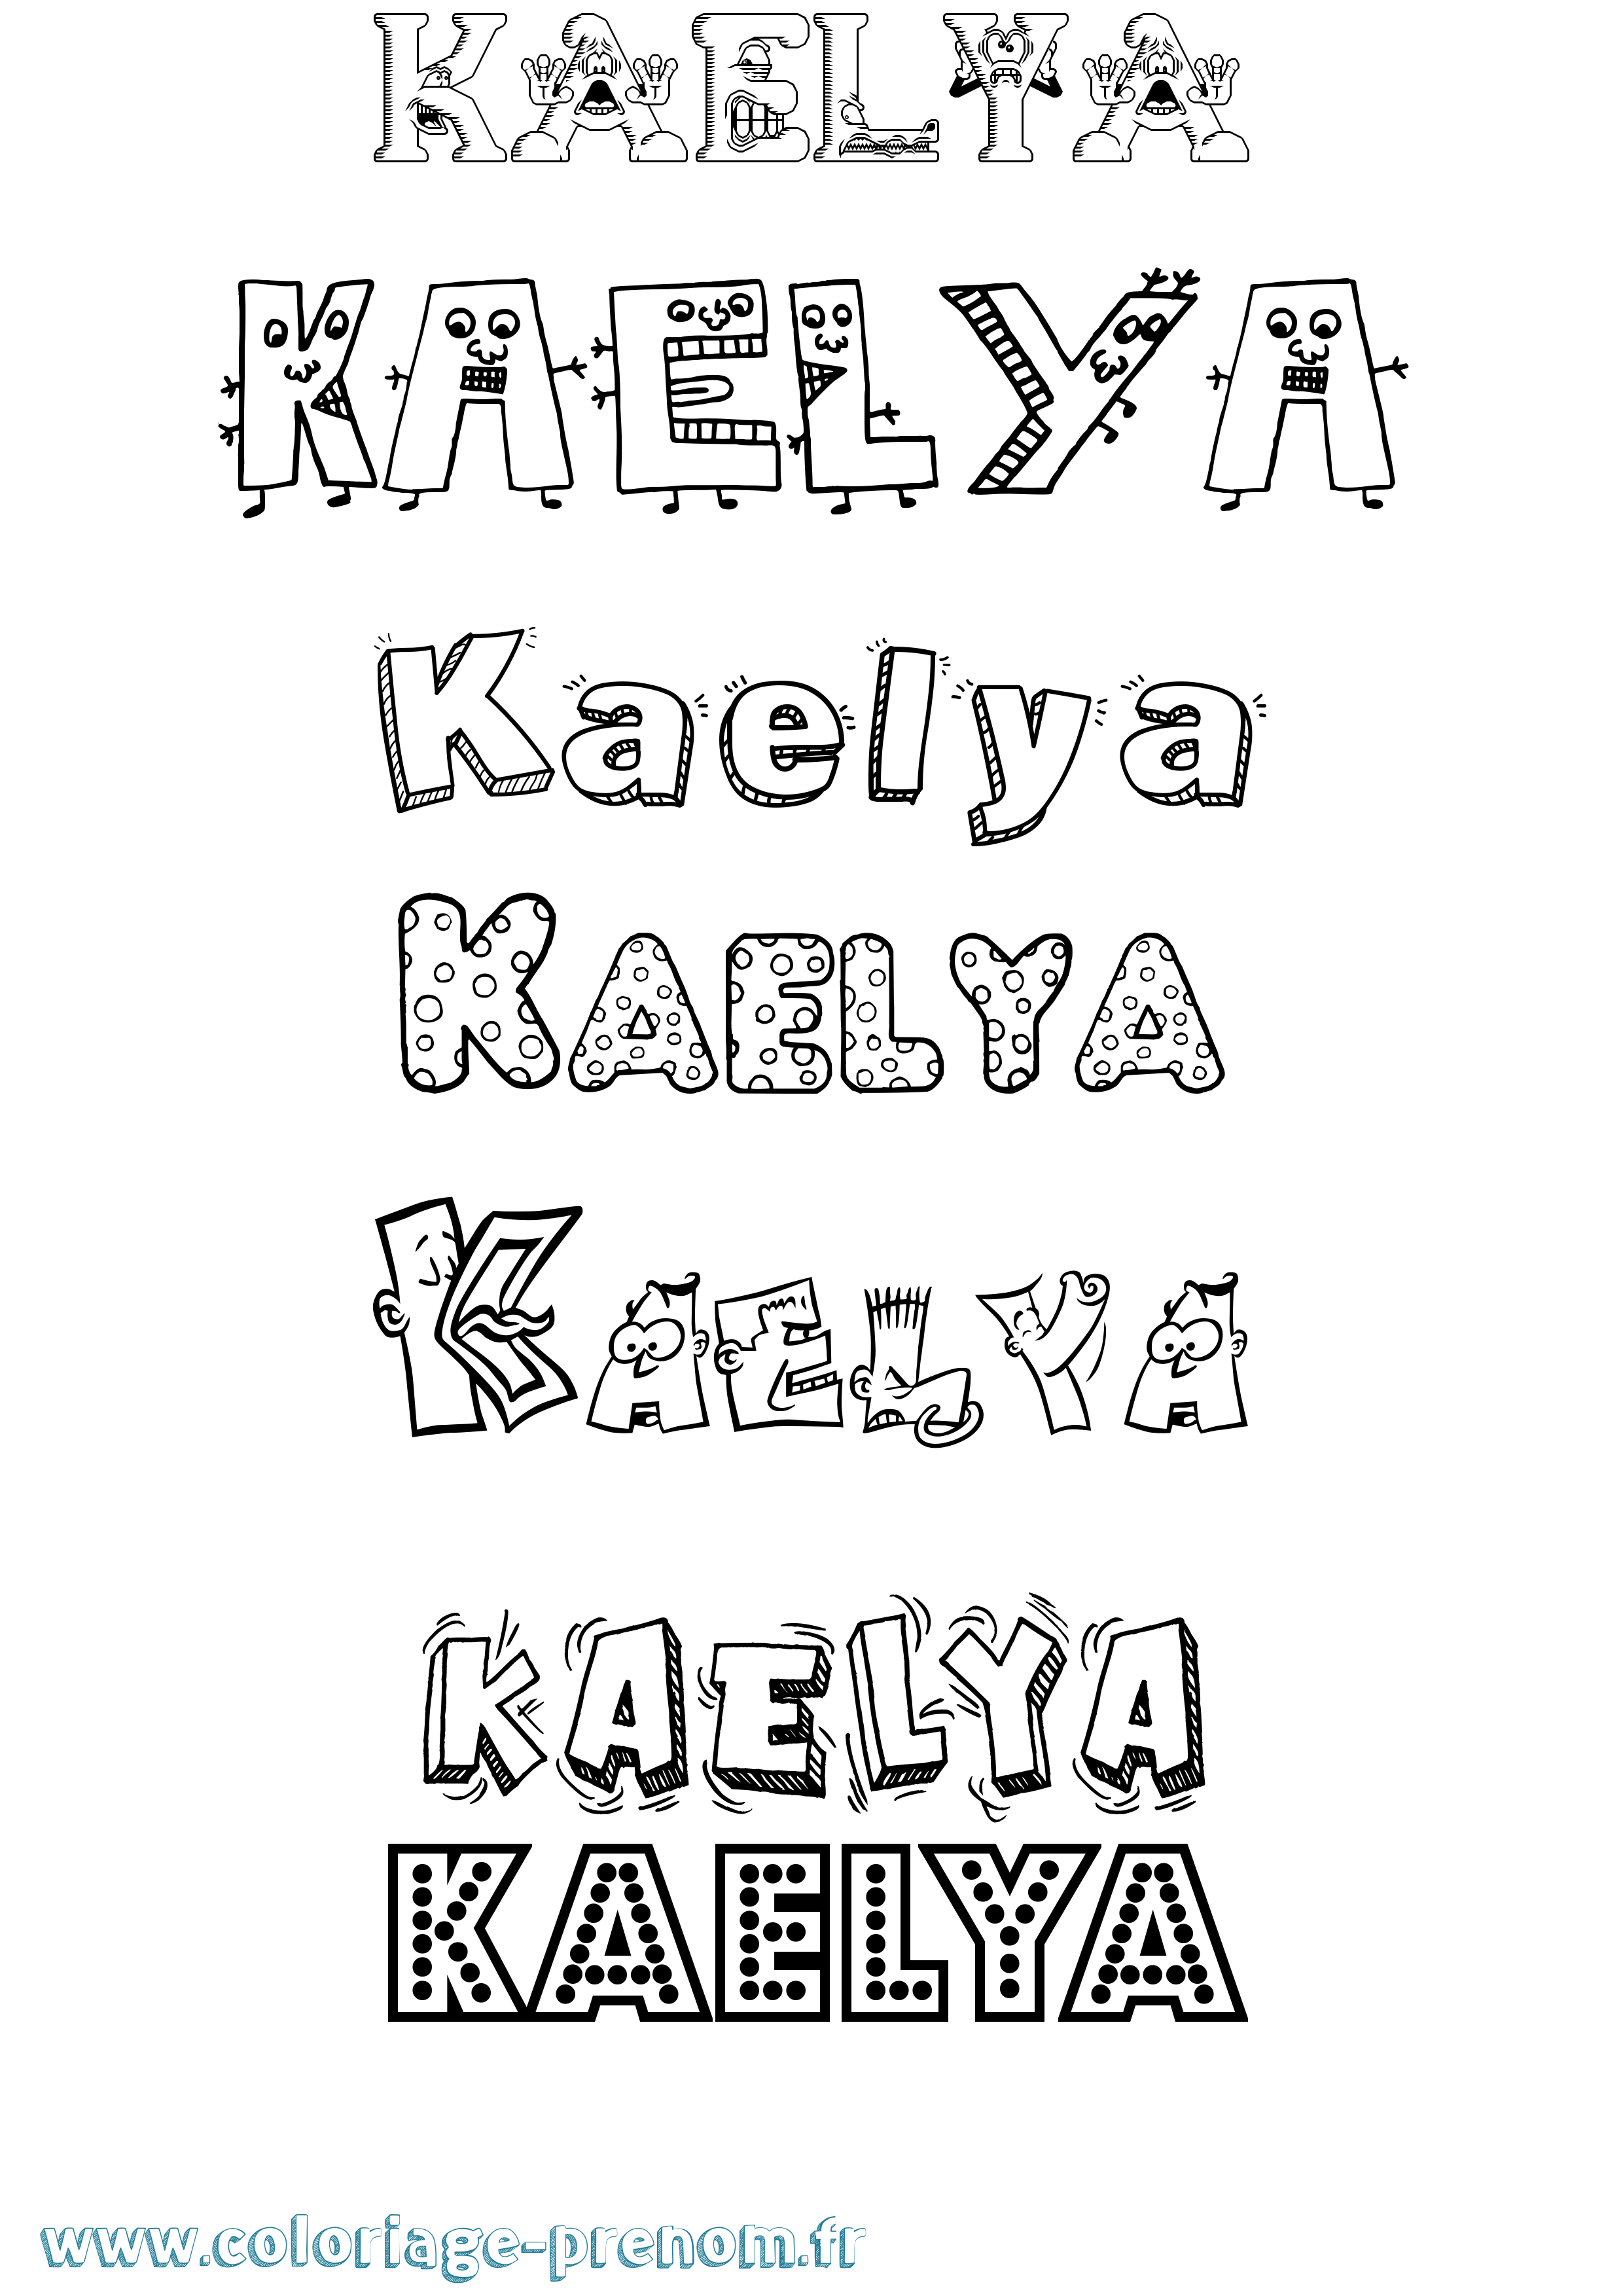 Coloriage prénom Kaelya Fun